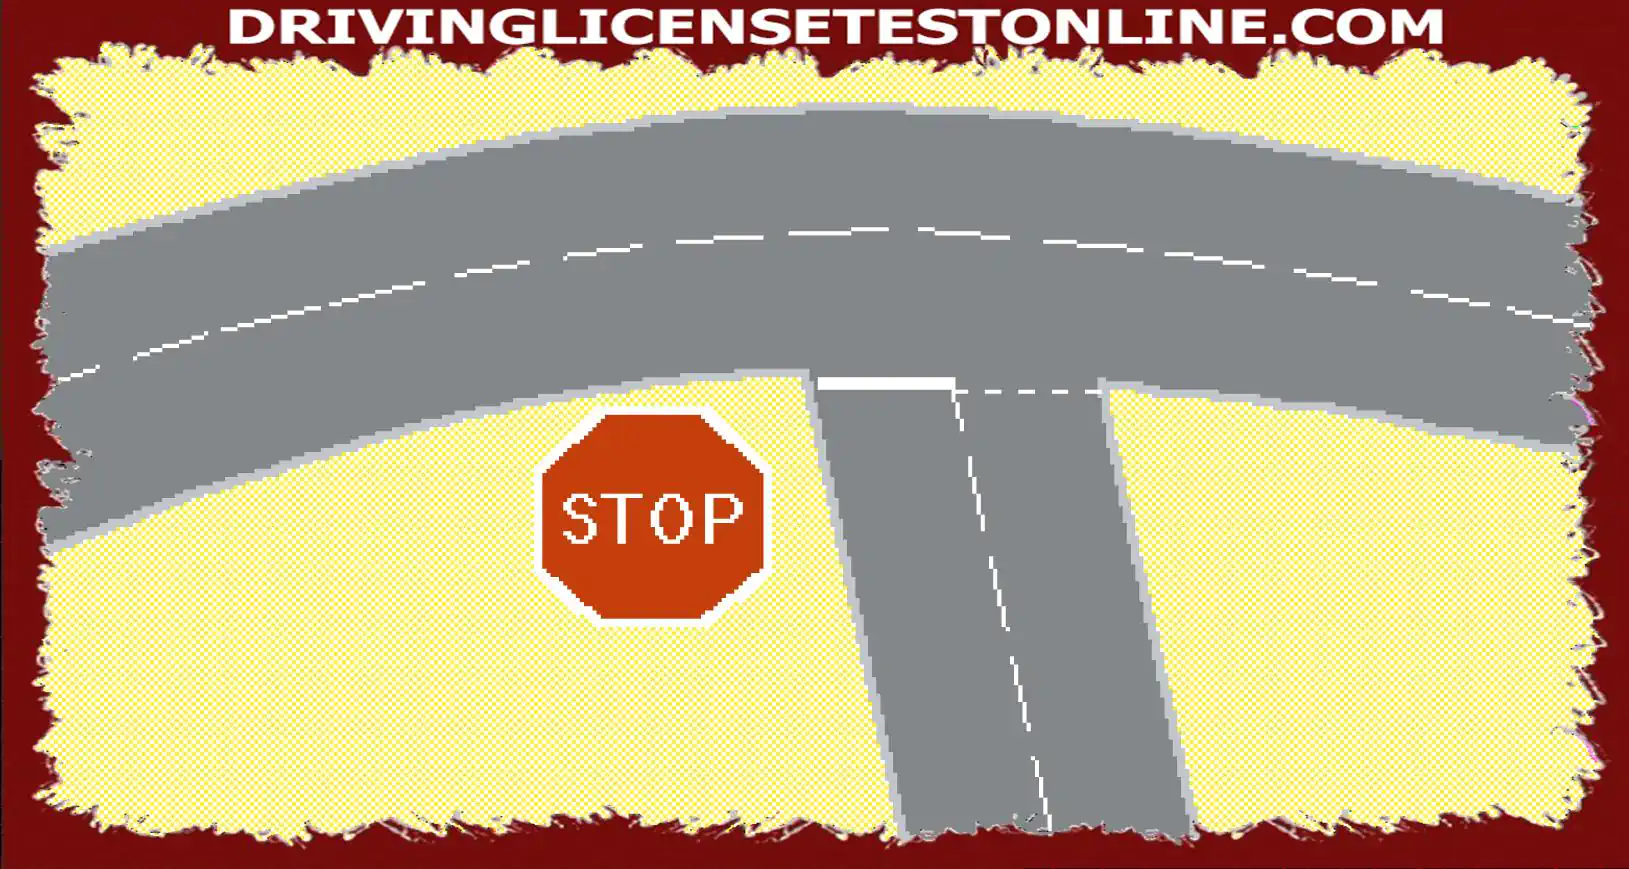 A questo incrocio, c'è un segnale di stop e una linea bianca continua sul manto stradale....